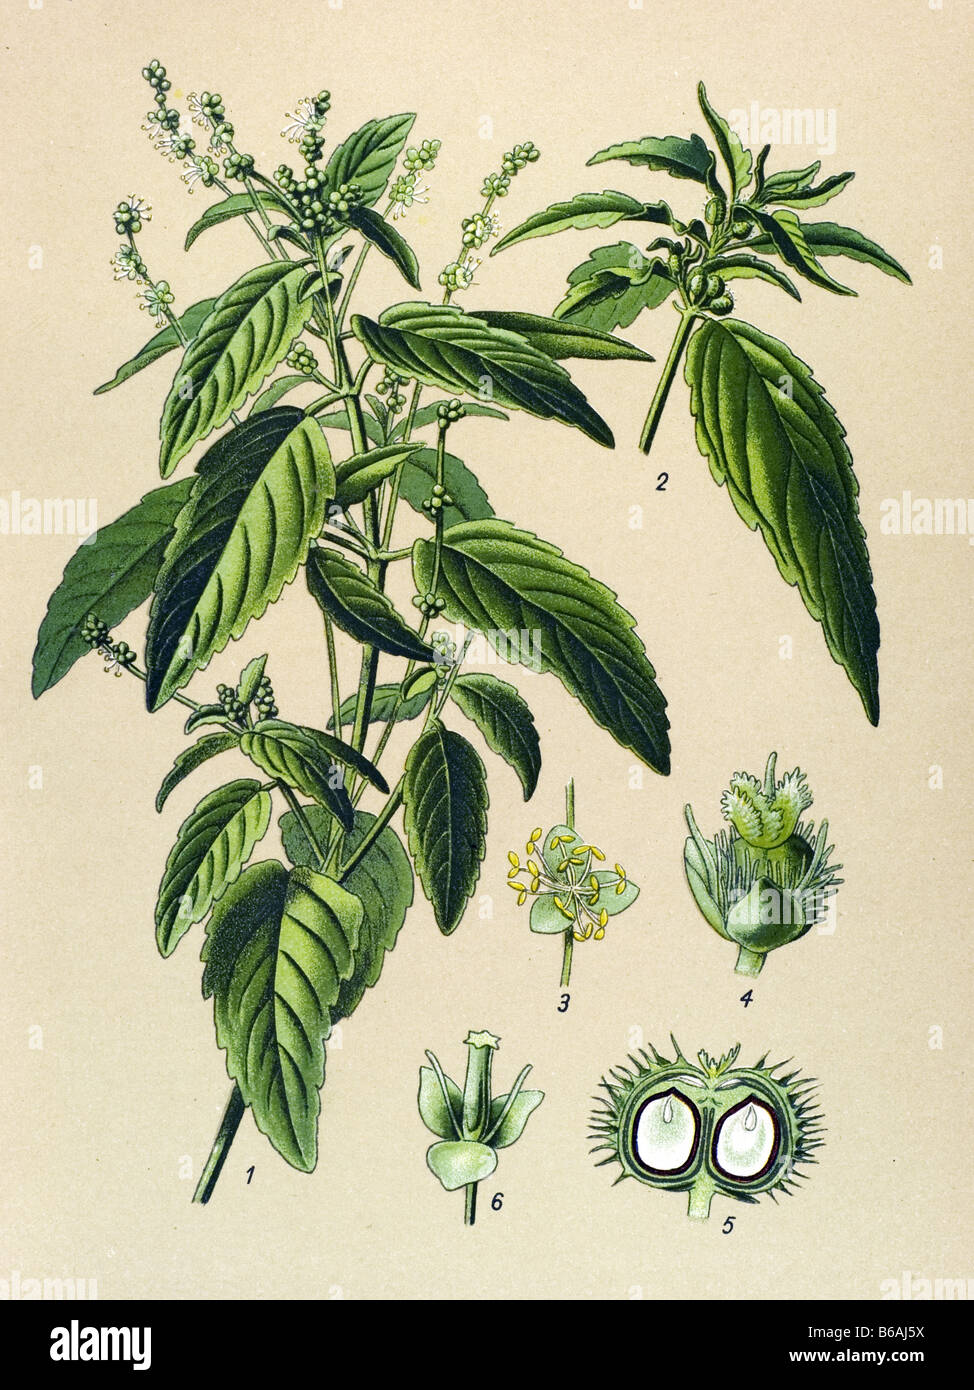 Mercurialis annua, poisonous plants illustrations Stock Photo